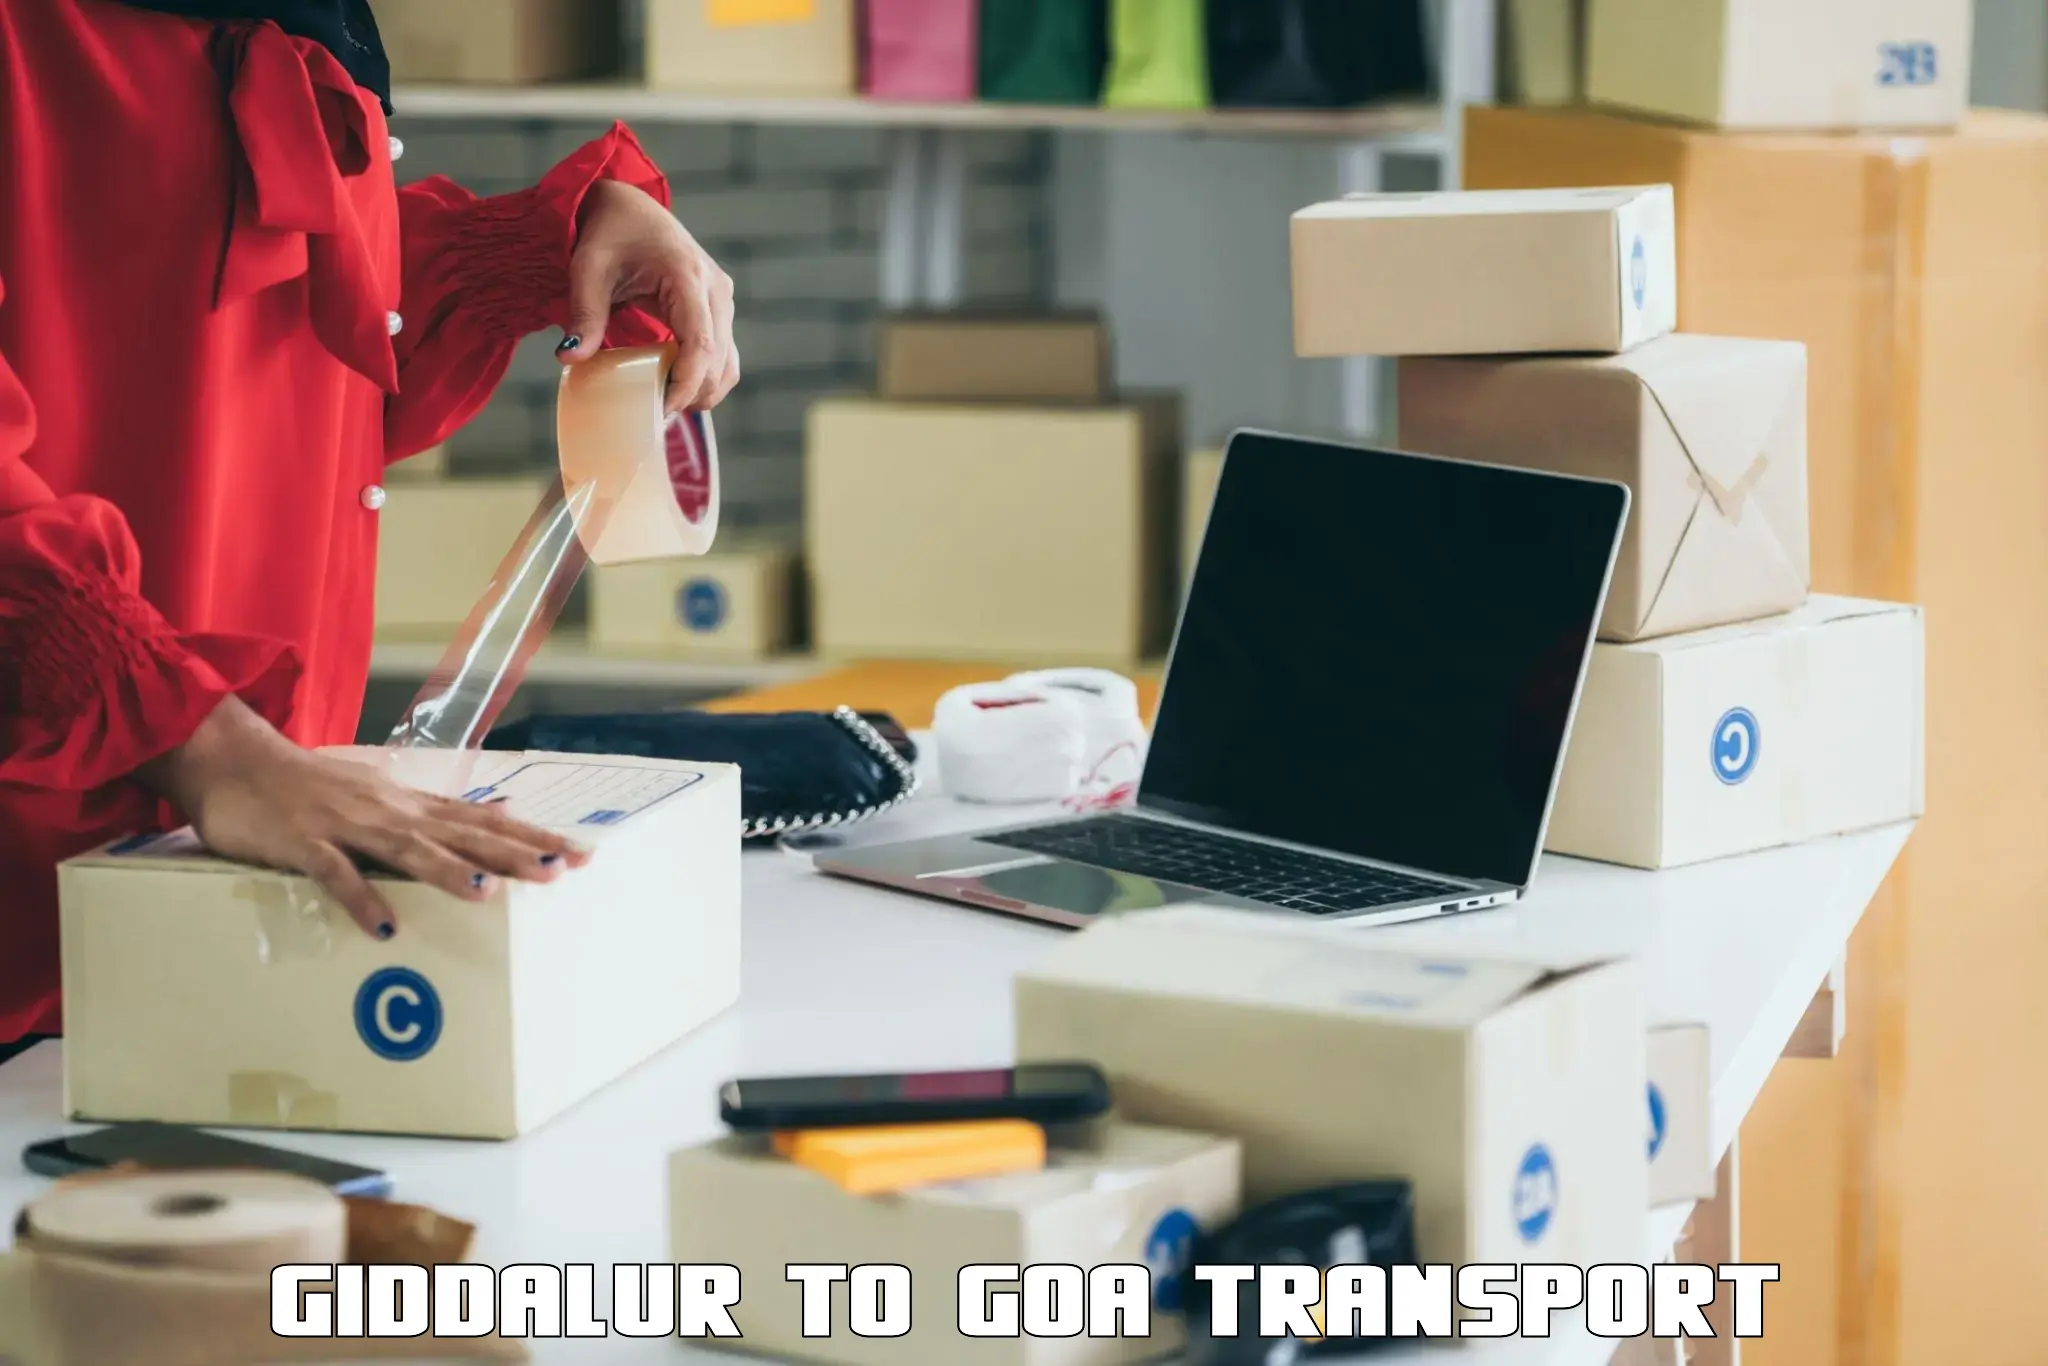 Online transport service Giddalur to Panjim